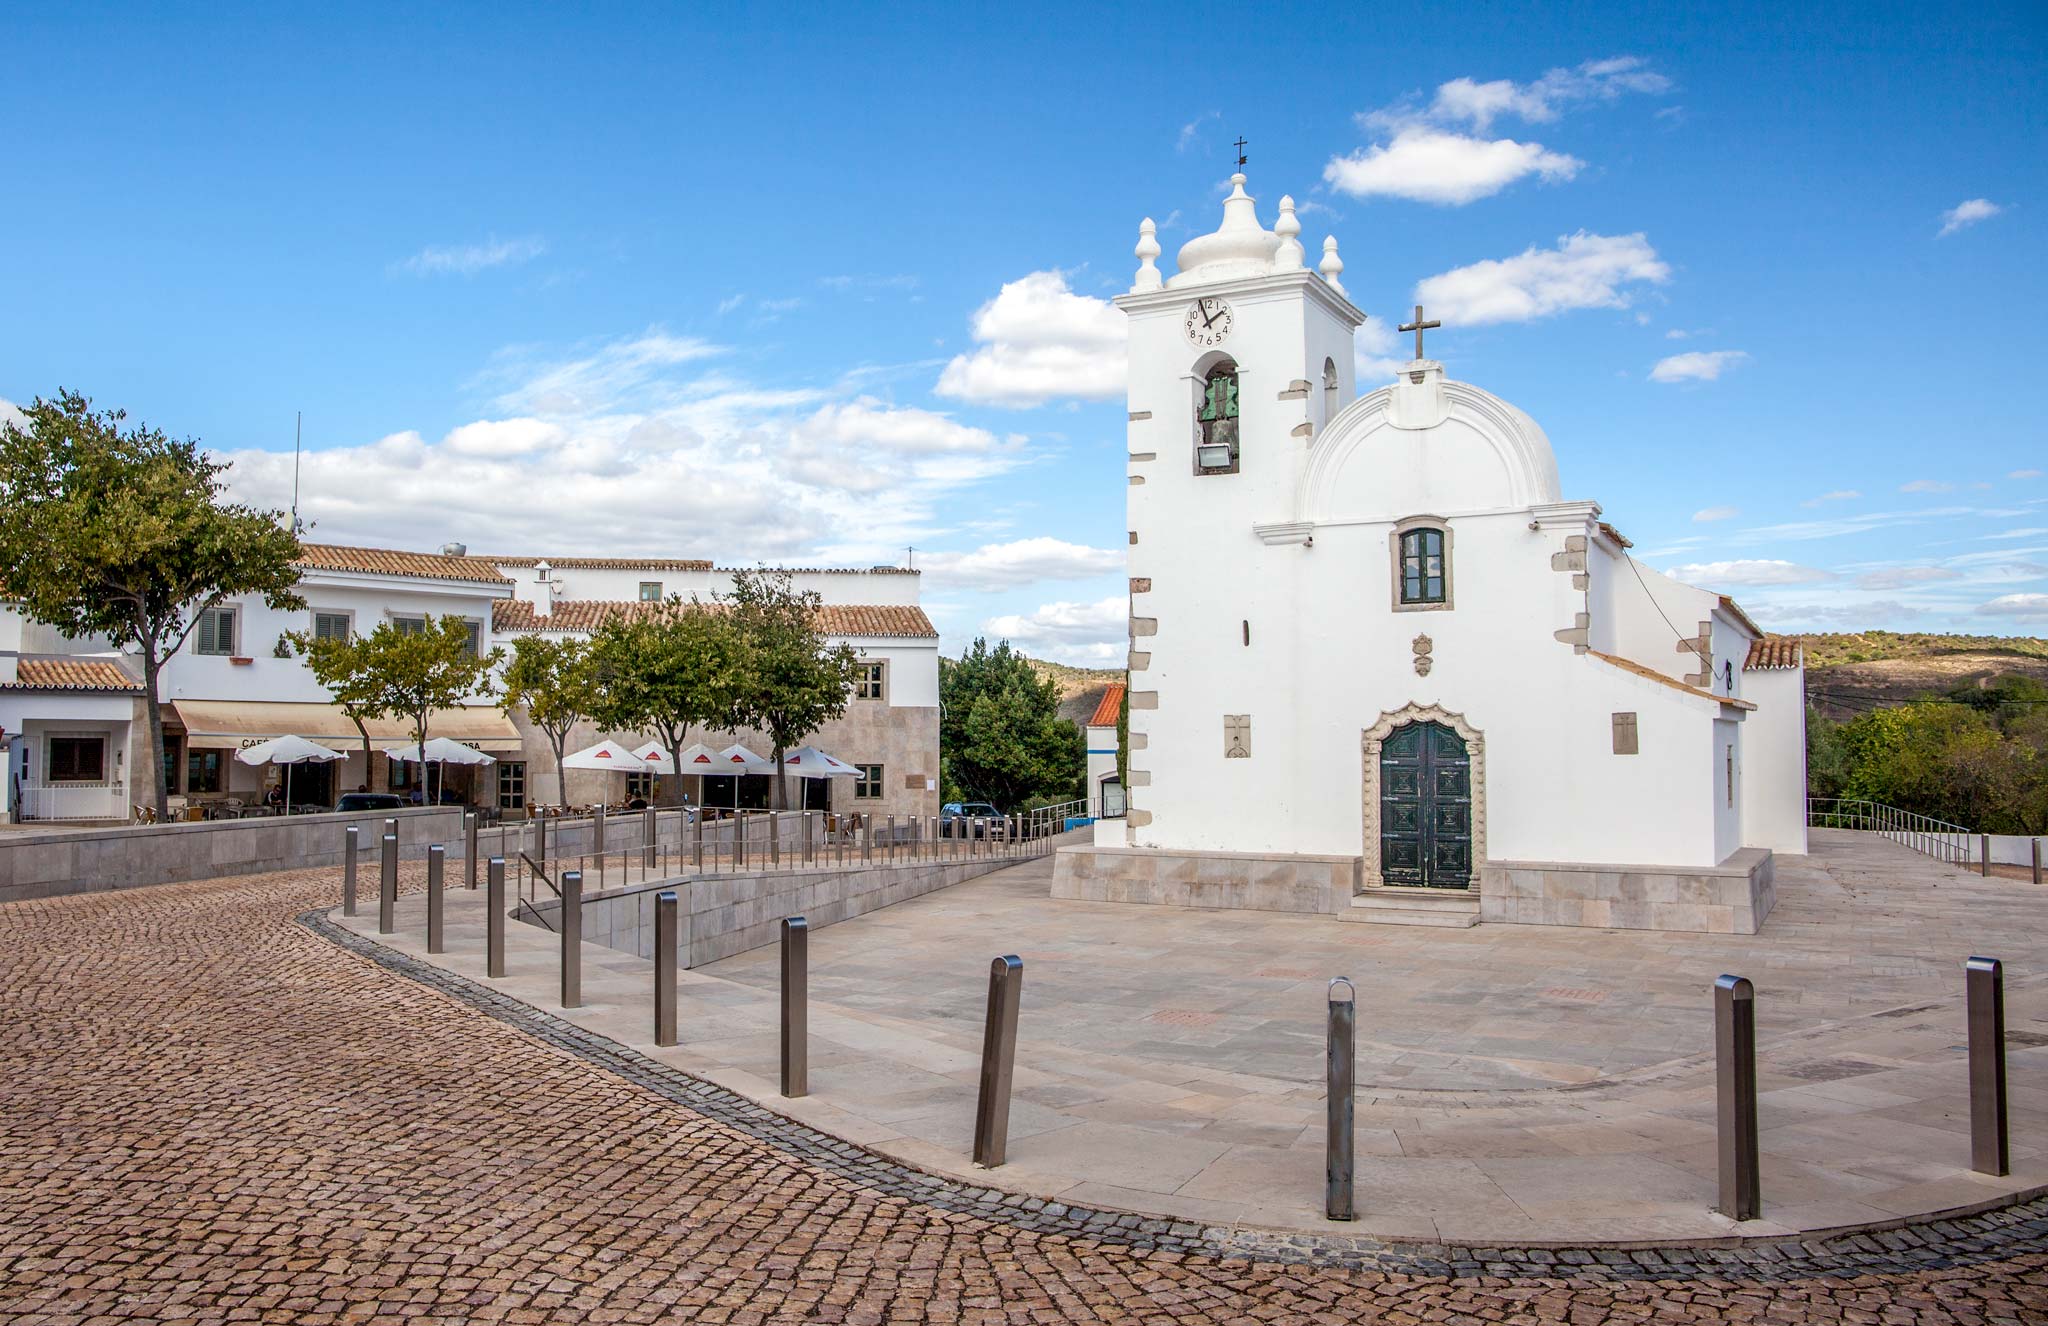 The small church in Querenca, a secret Algarve village